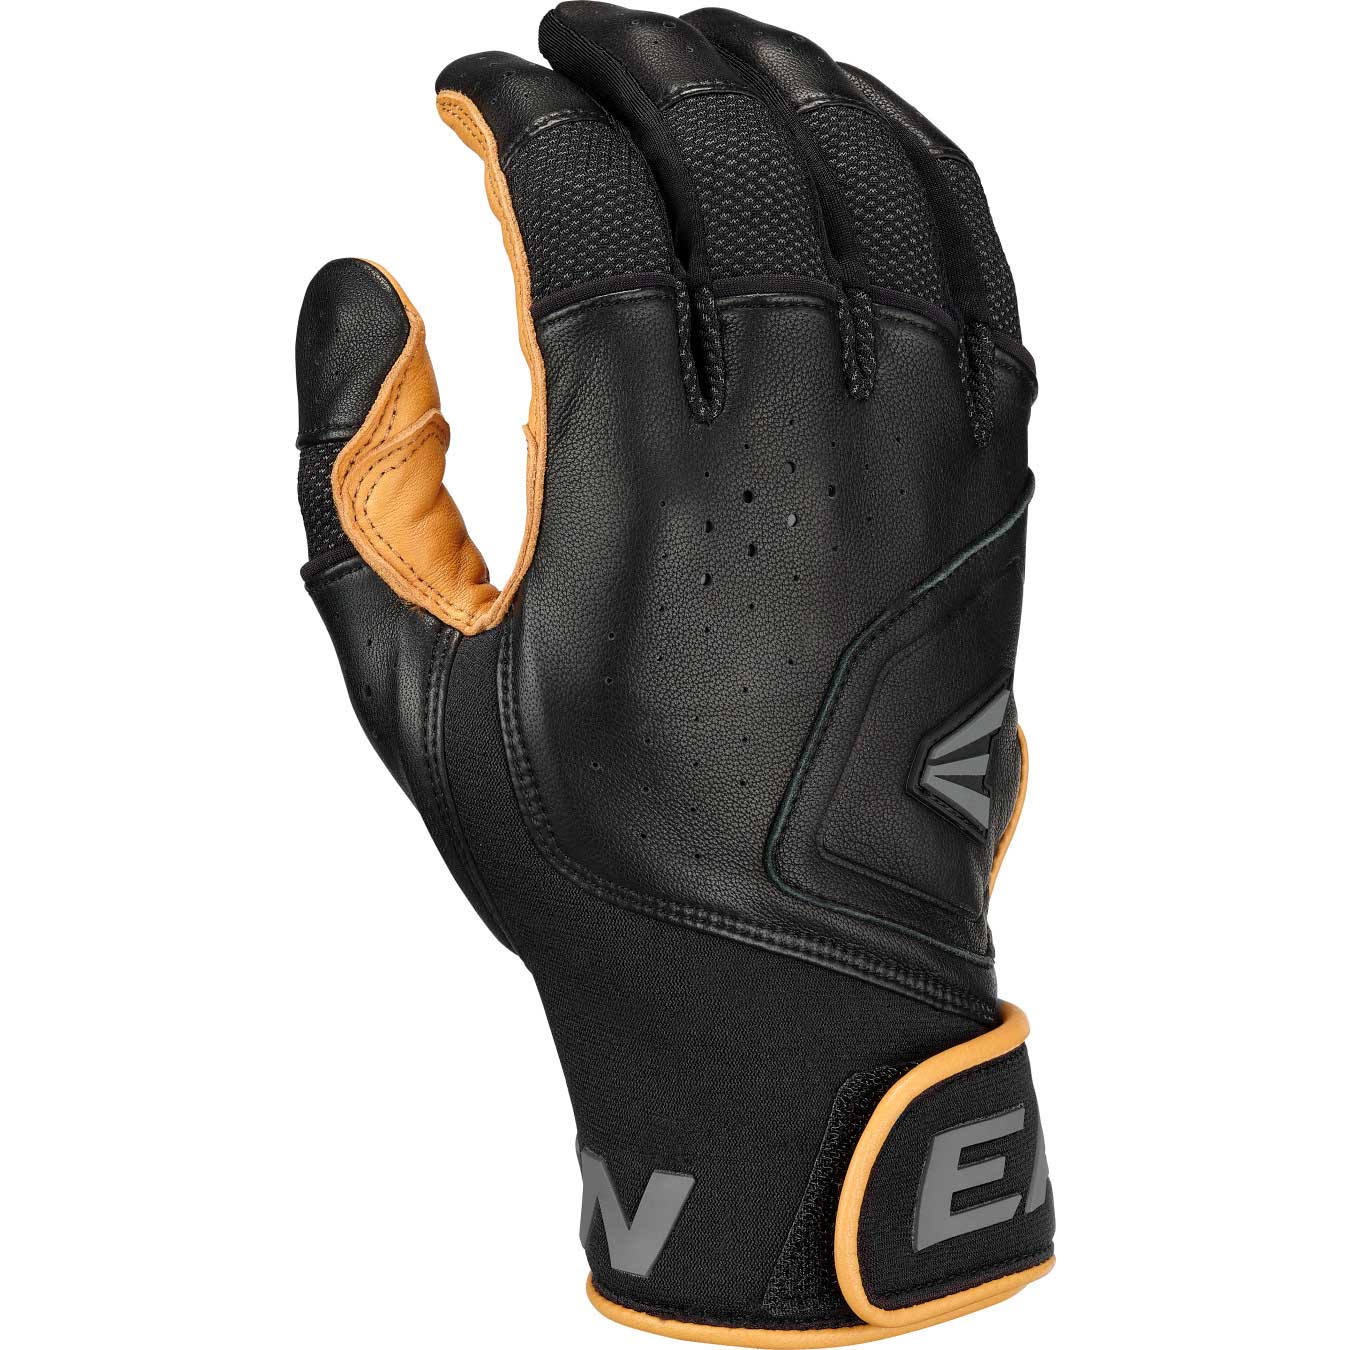 Easton MAV1 Pro Batting Gloves